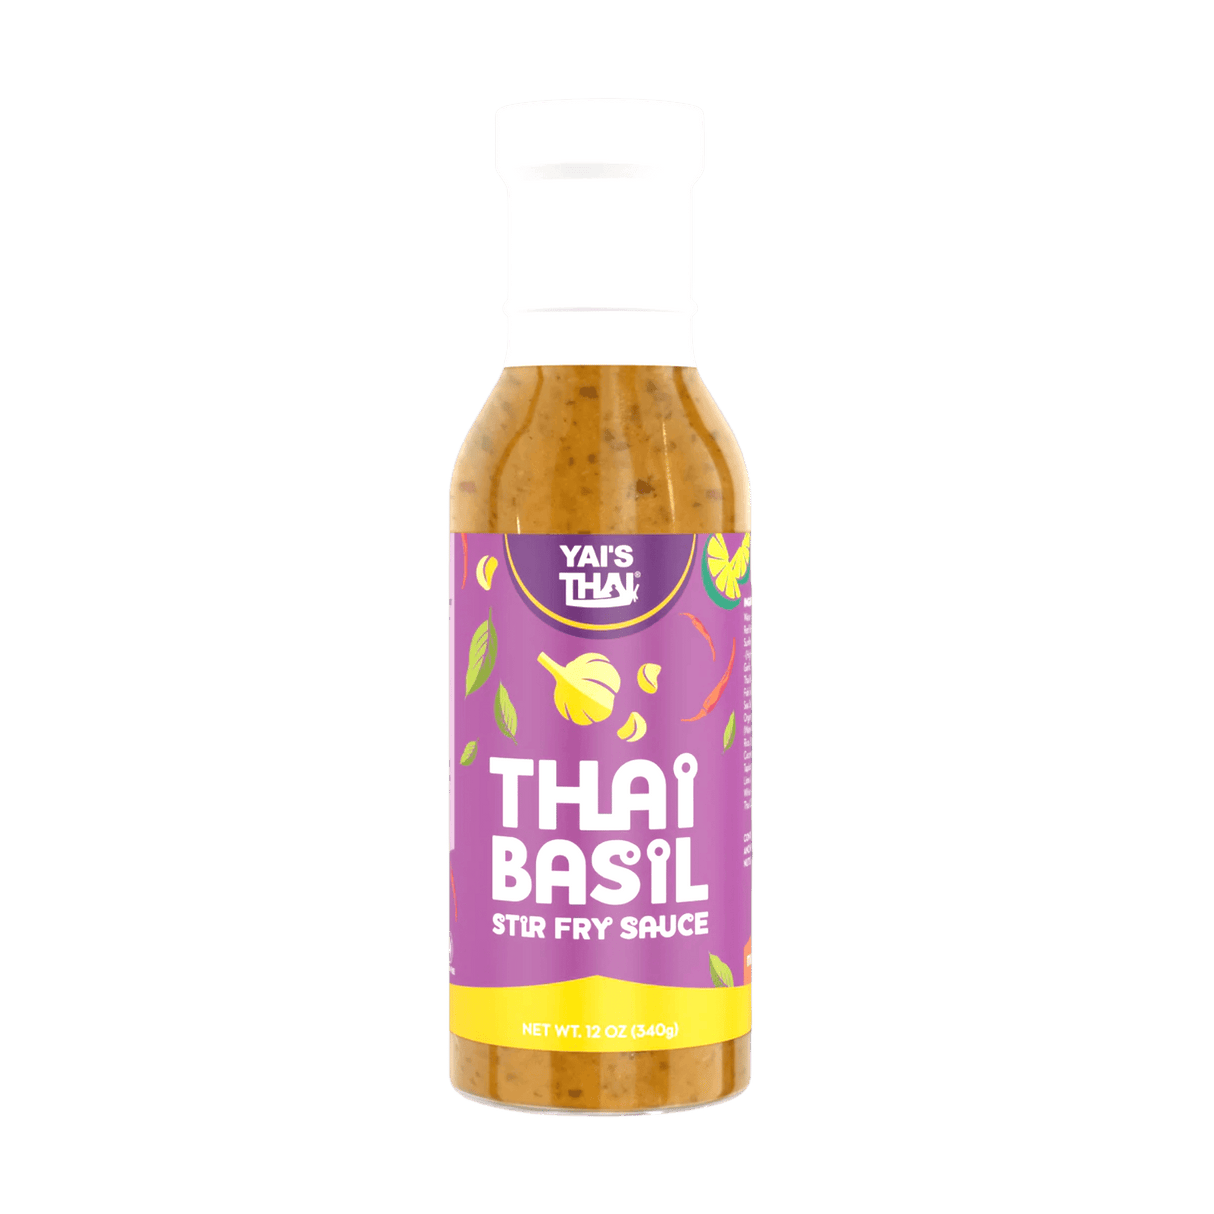 Yai's Thai Thai Basil Stir Fry Sauce